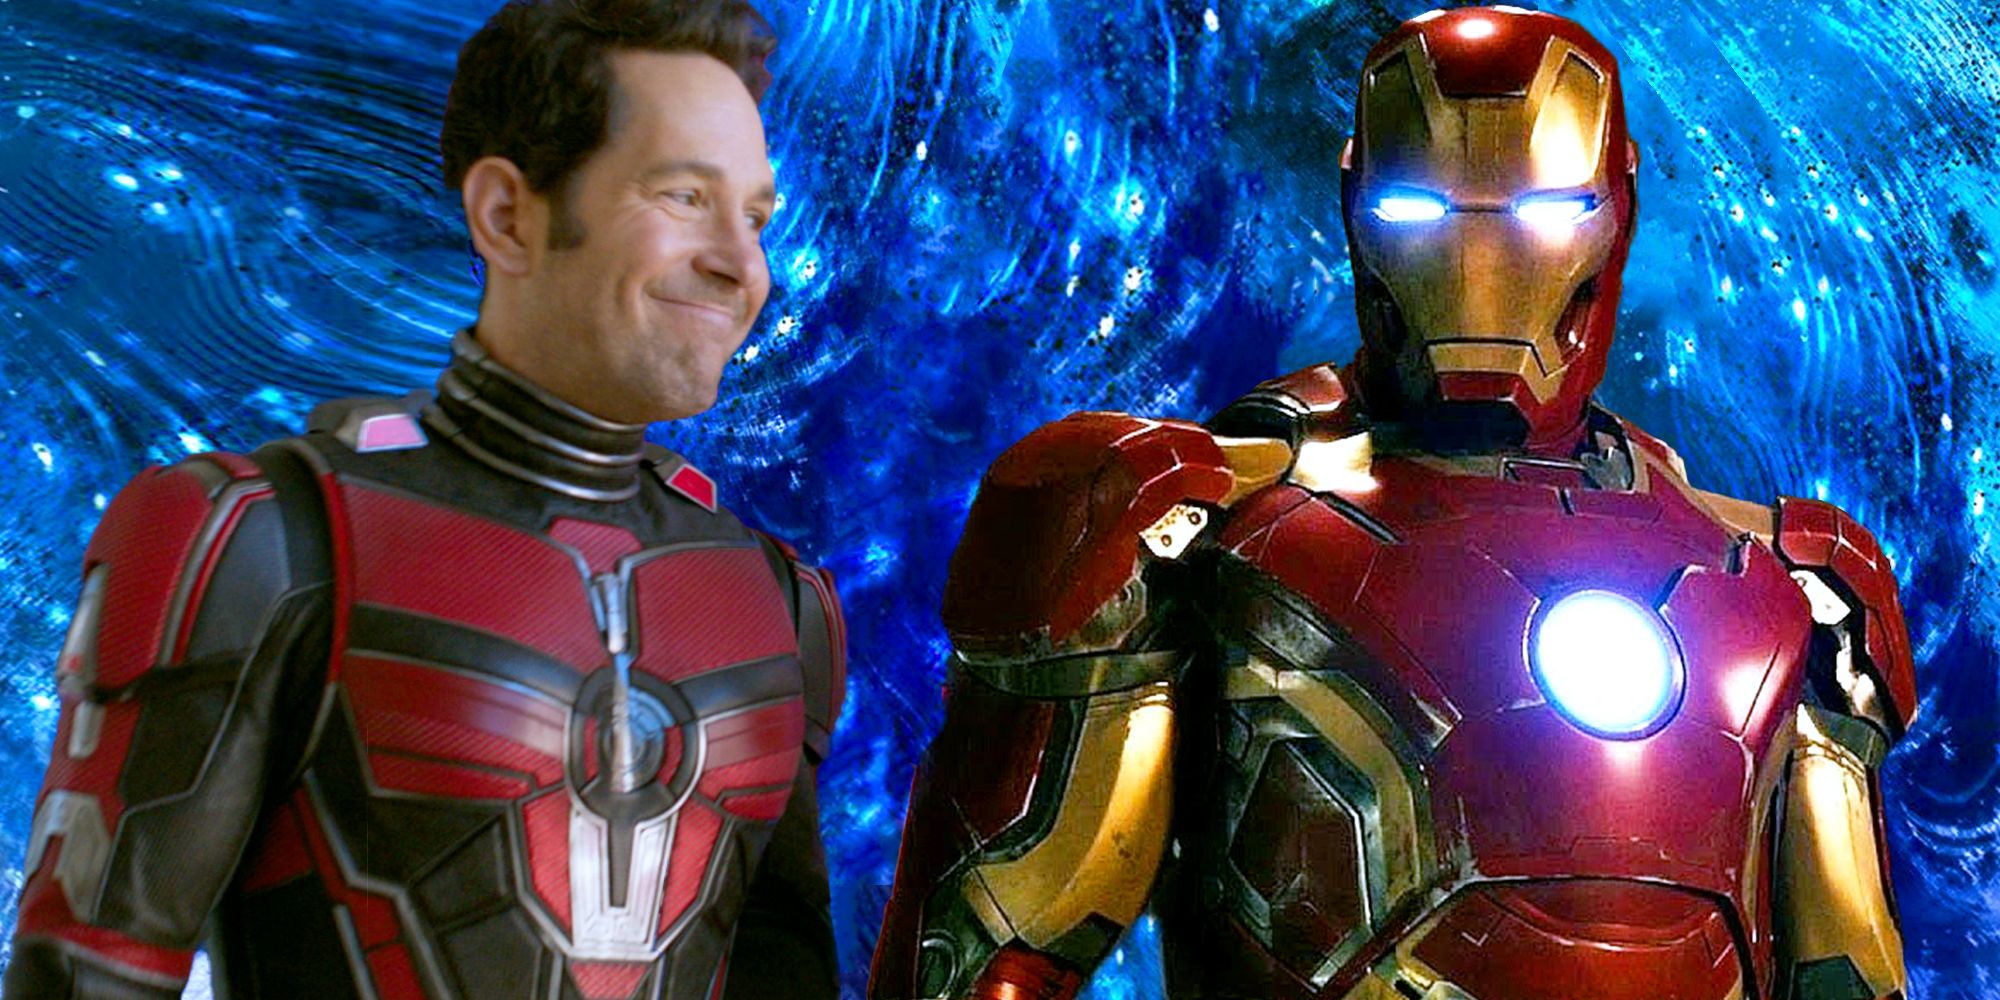 Ant-Man stares lovingly at Tony Stark in his Iron Man armor.